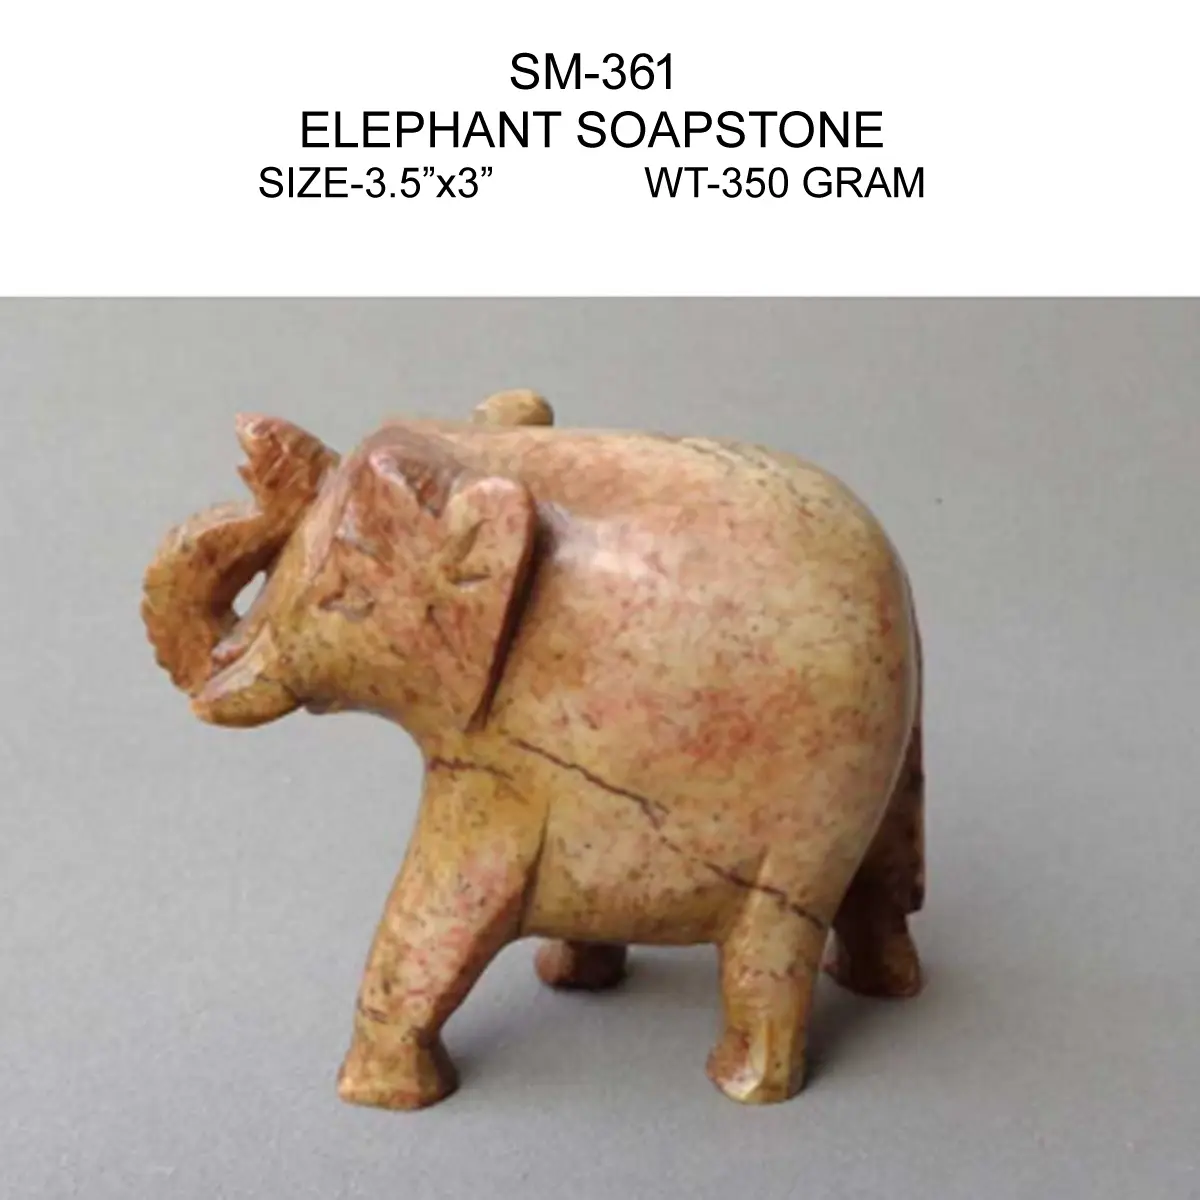 ELEPHANT SOAPSTONE